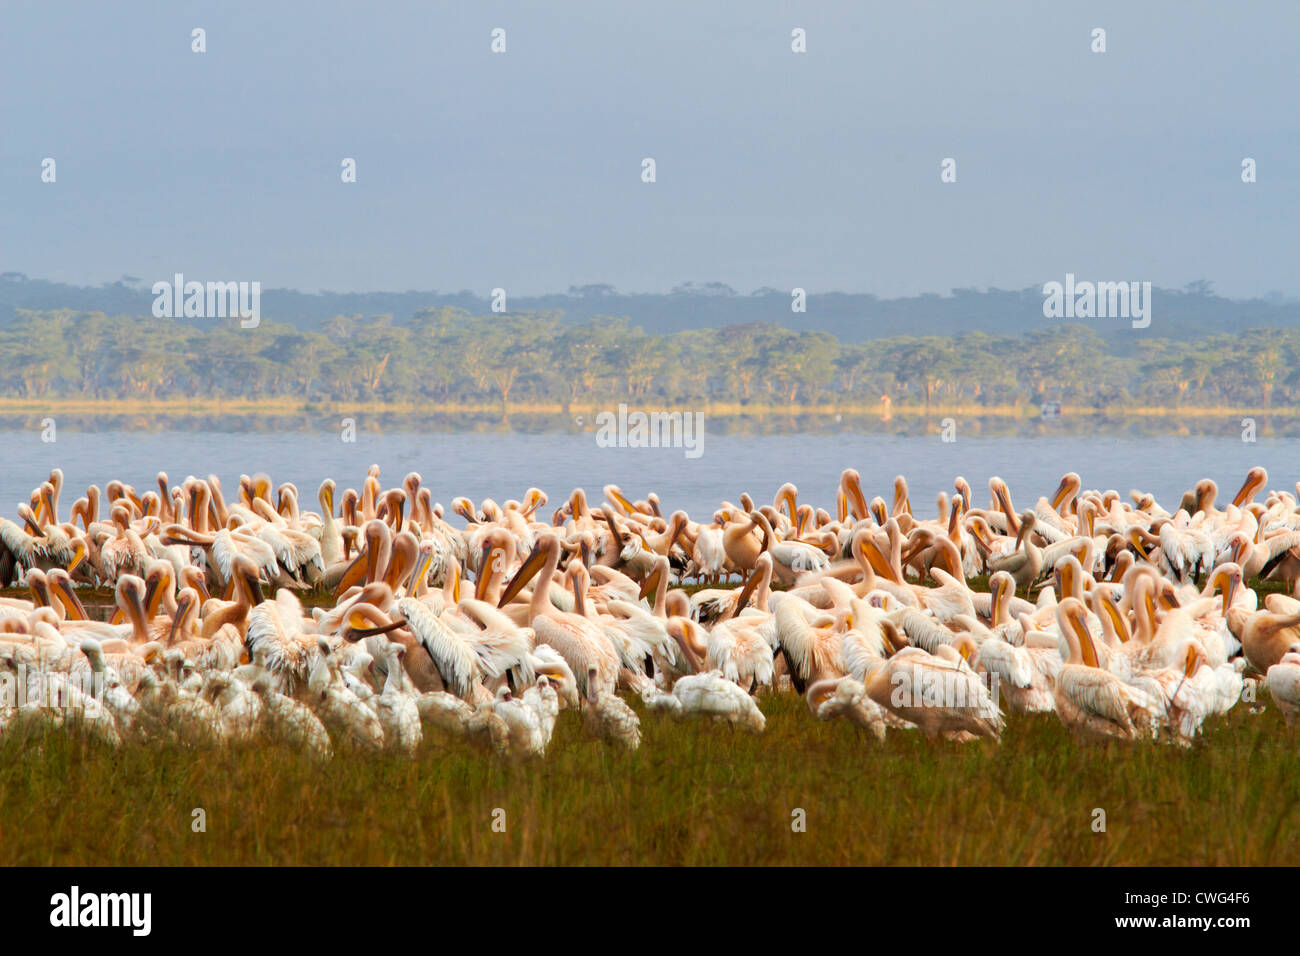 Pelicans at Lake Nakuru Kenya Africa Stock Photo